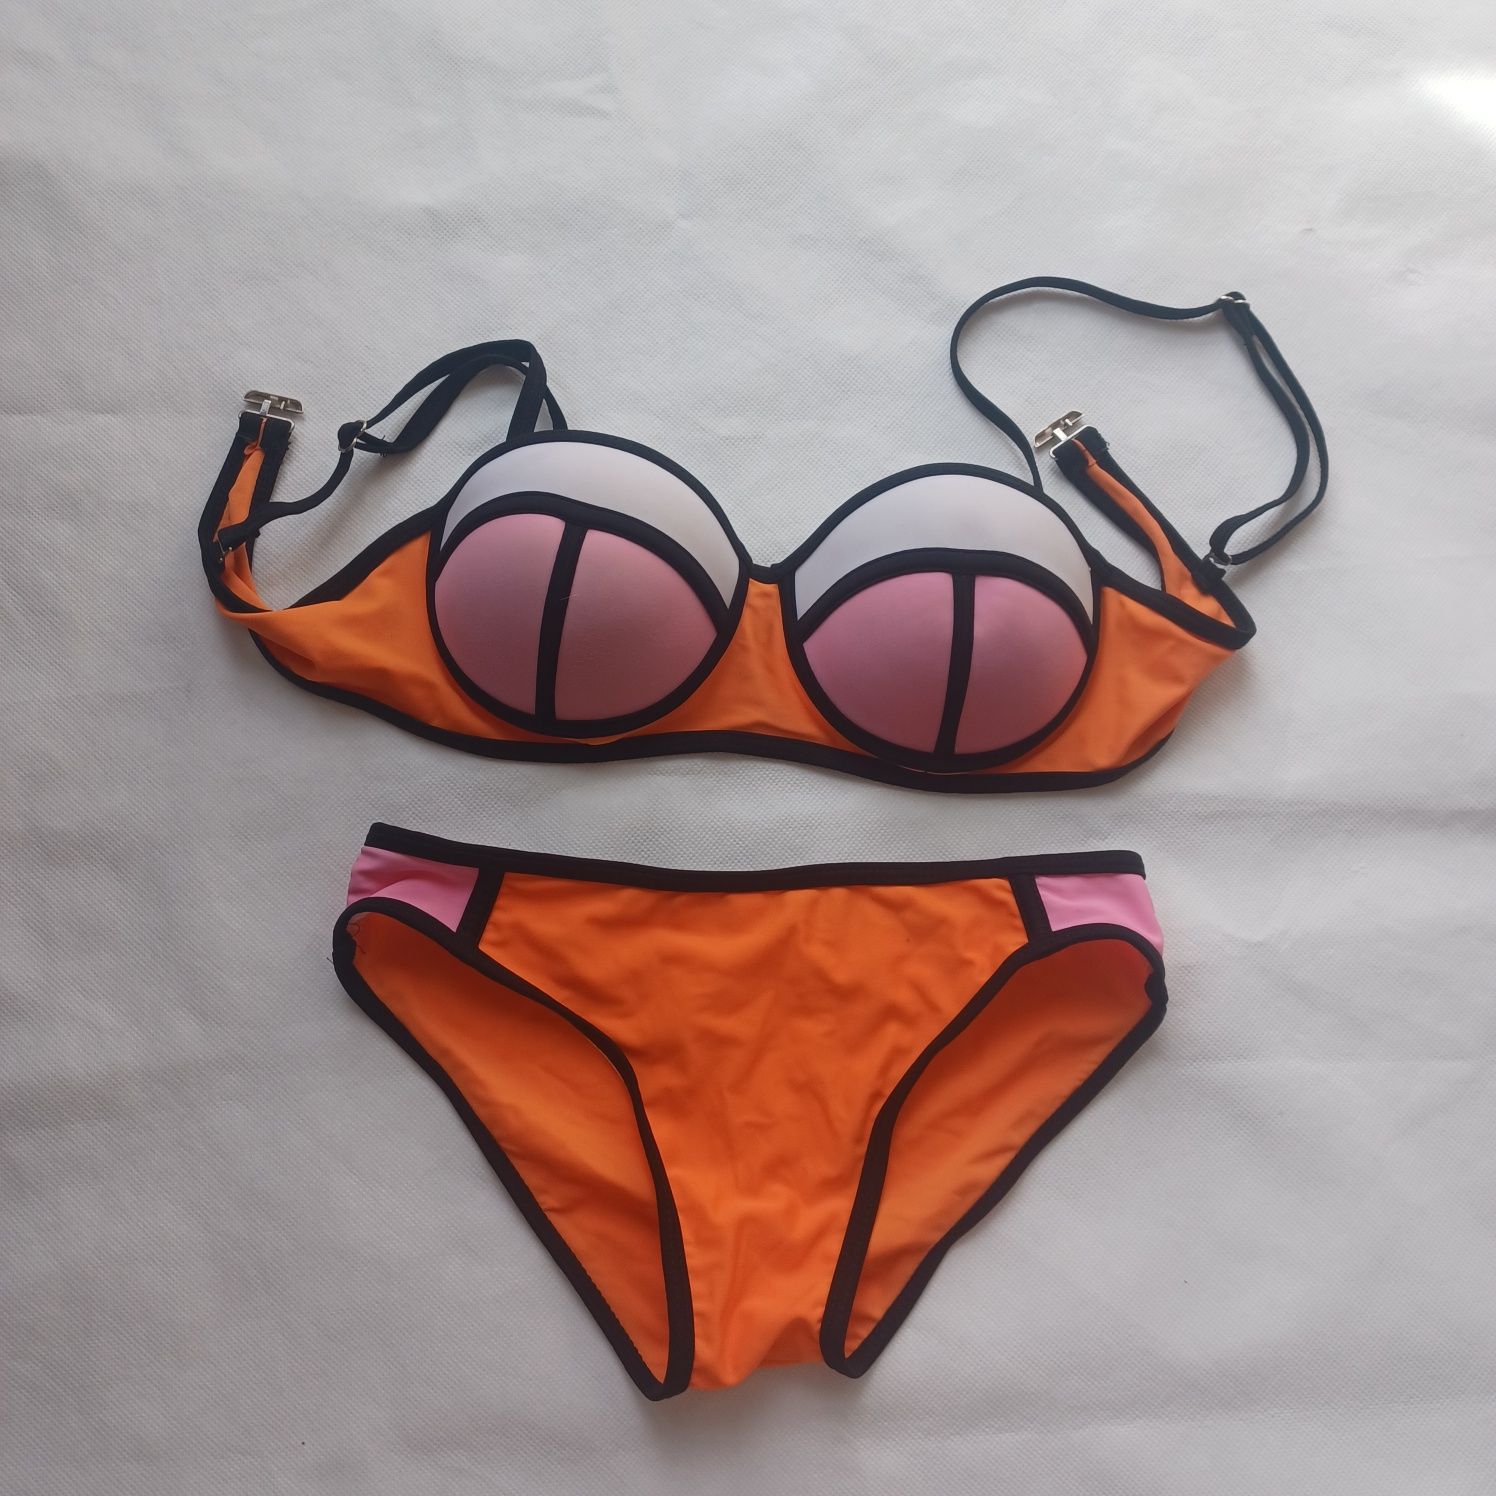 Bikini strój kąpielowy dwuczęściowy XS S 34 36 pomarańczowy push up